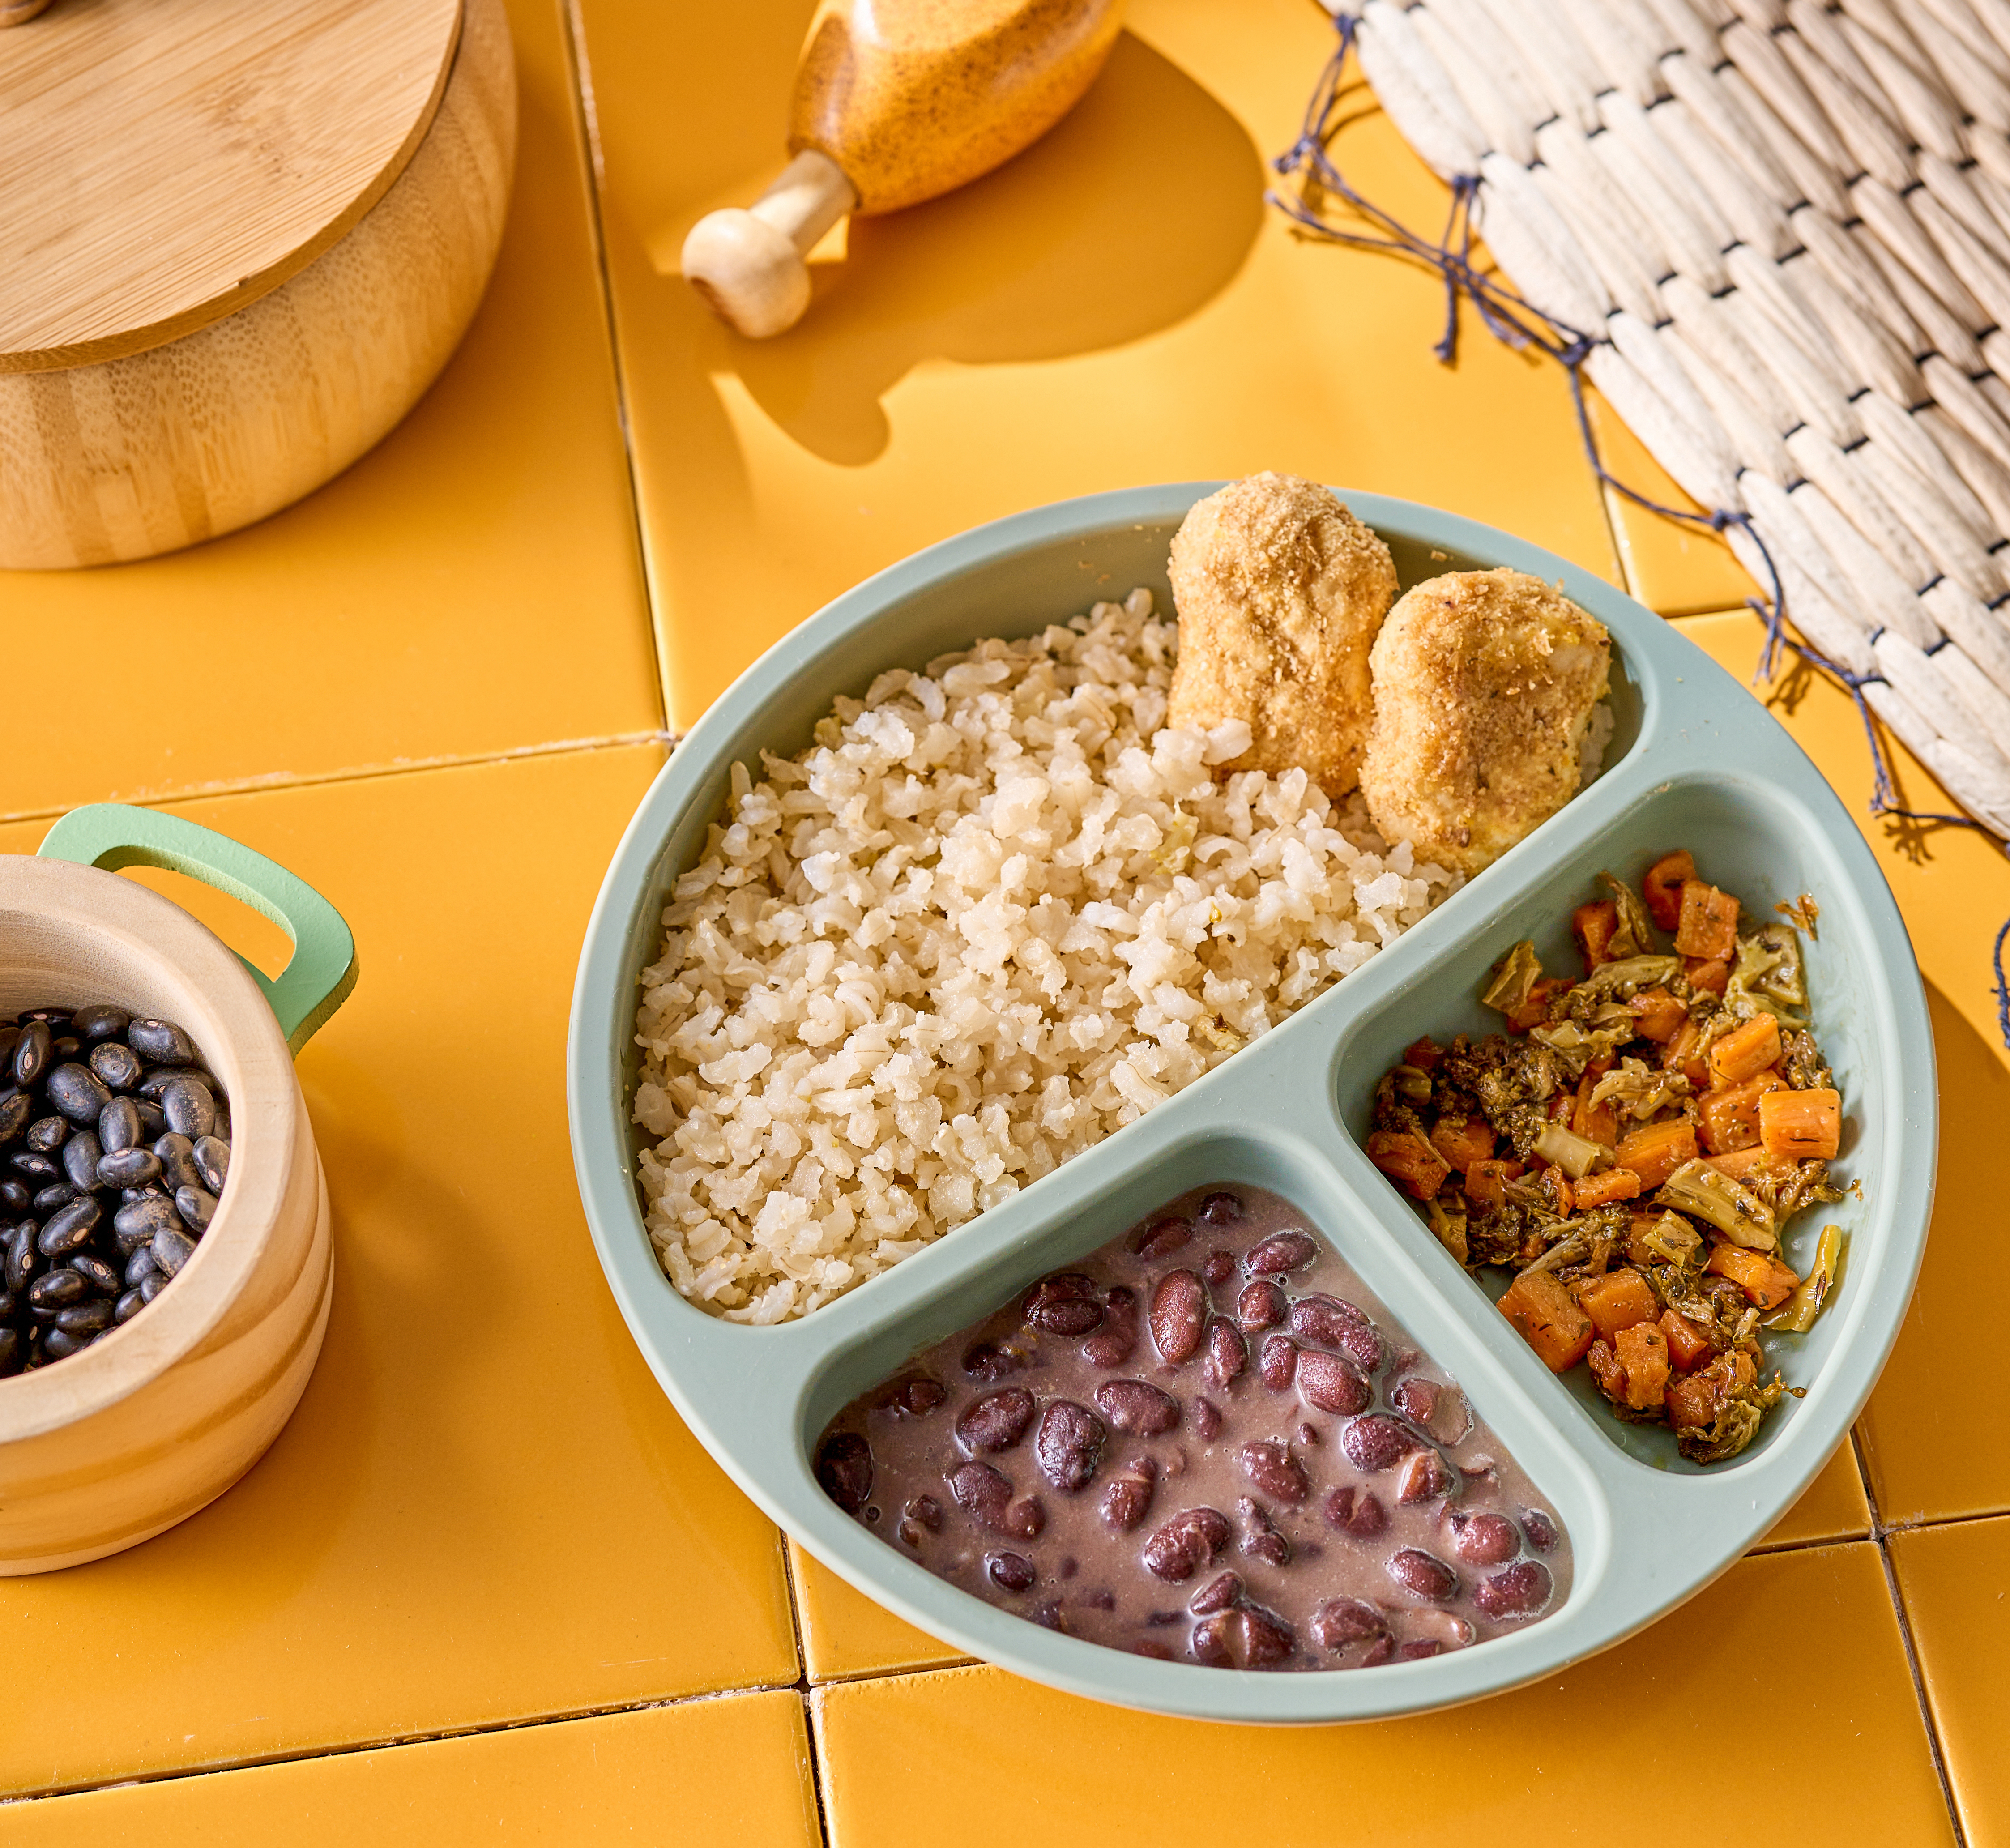 Nuggets de frango, arroz integral, feijão preto e legumes - 220g